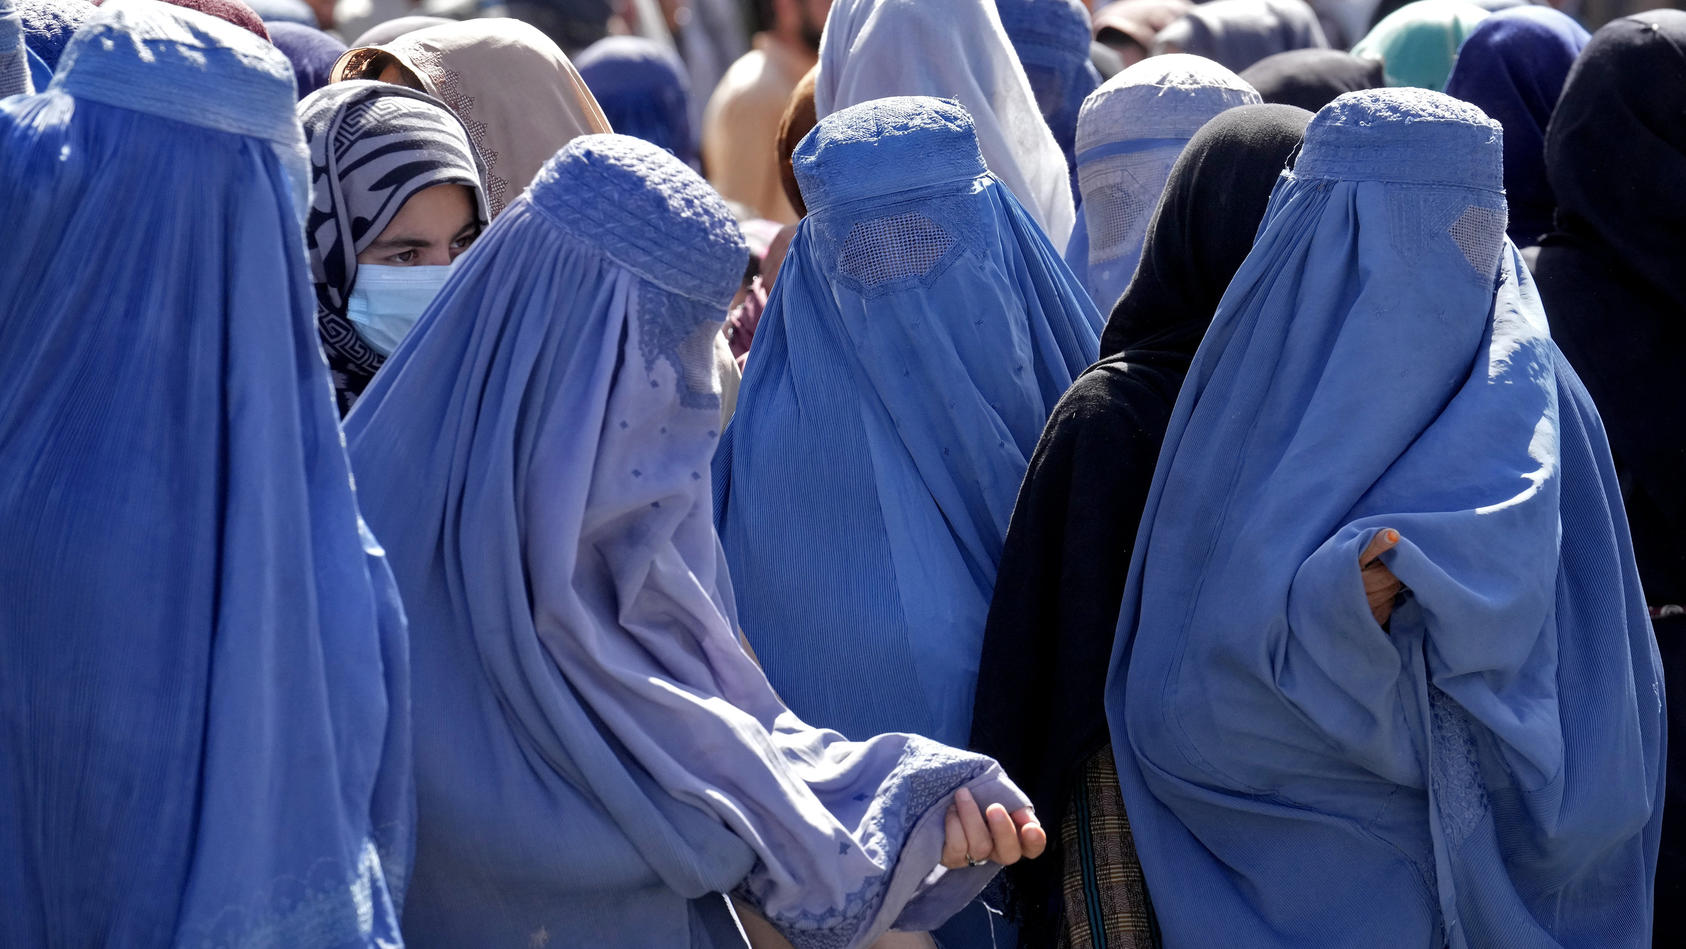 ARCHIV - 15.08.2022, Afghanistan, Kabul: Frauen in Burkas warten auf Lebensmittelrationen, die von einer humanitären Hilfsorganisation aus Saudi-Arabien verteilt werden. In Afghanistan befürchten Medienberichten zufolge Frauen weitere Einschränkungen